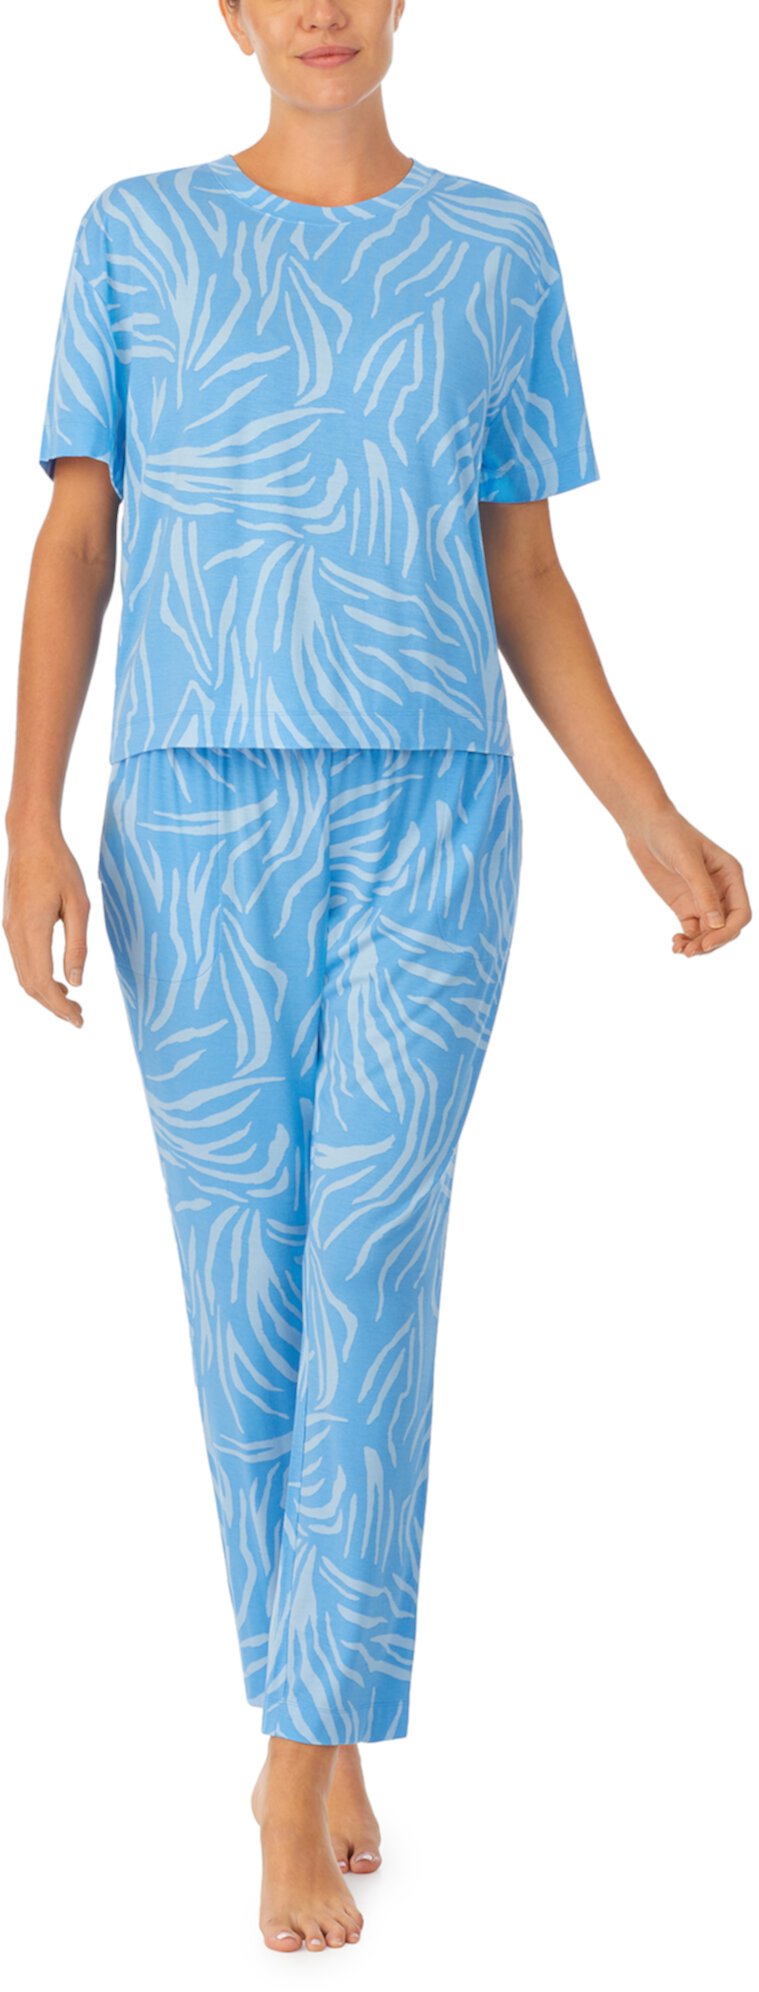 Укороченный пижамный комплект с футболкой с короткими рукавами Sanctuary